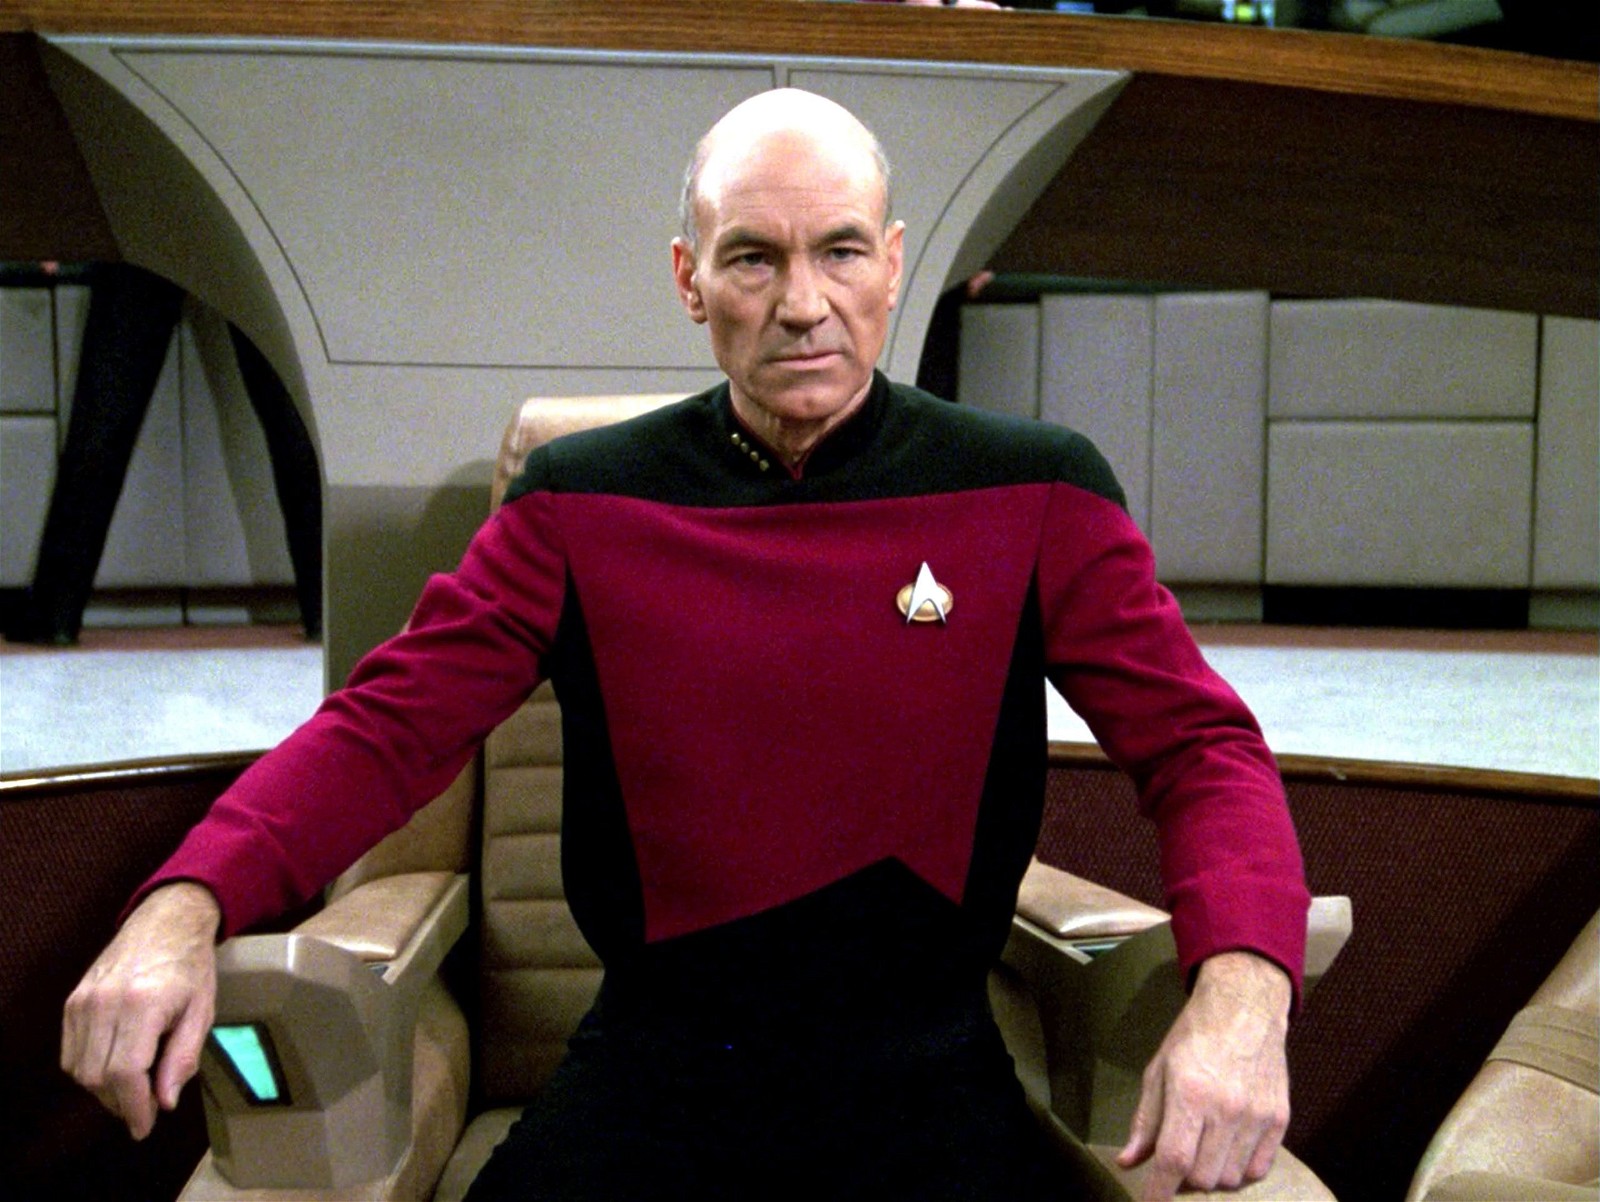 Sir Patrick Stewart in Star Trek: The Next Generation.